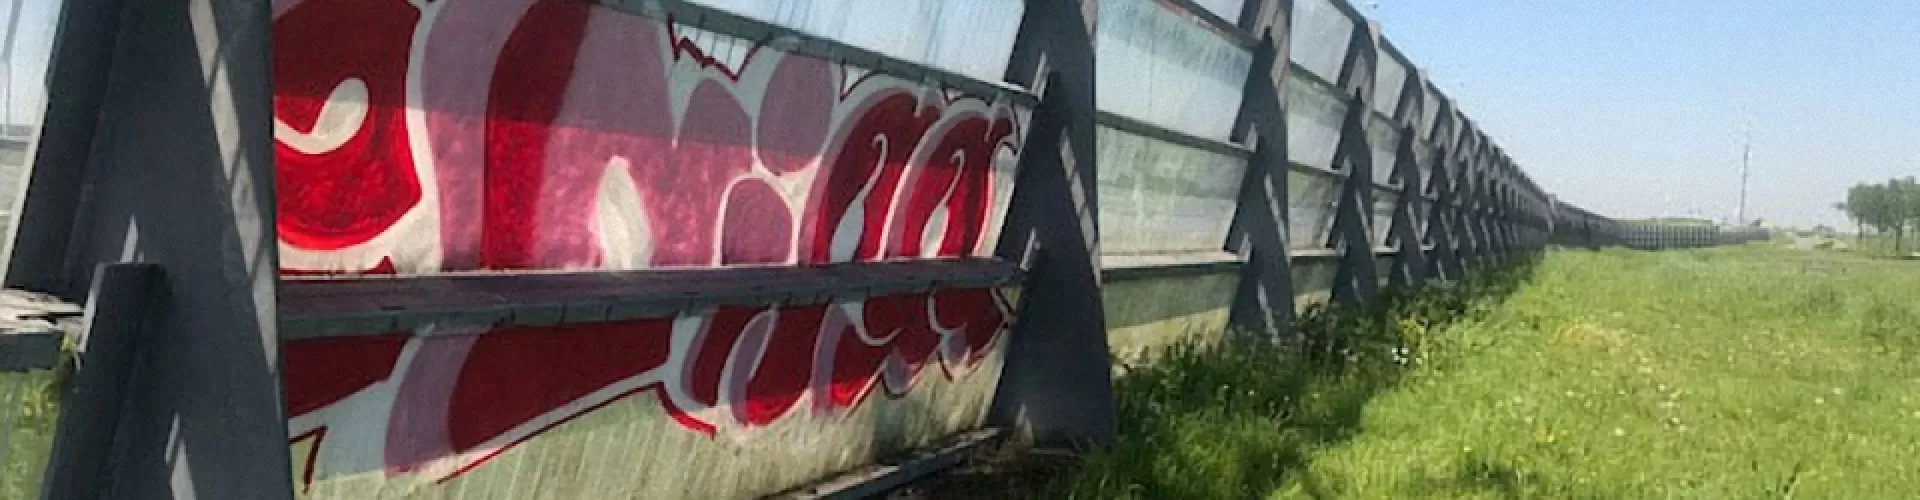 Welke bedrijven willen graffiti laten verwijderen